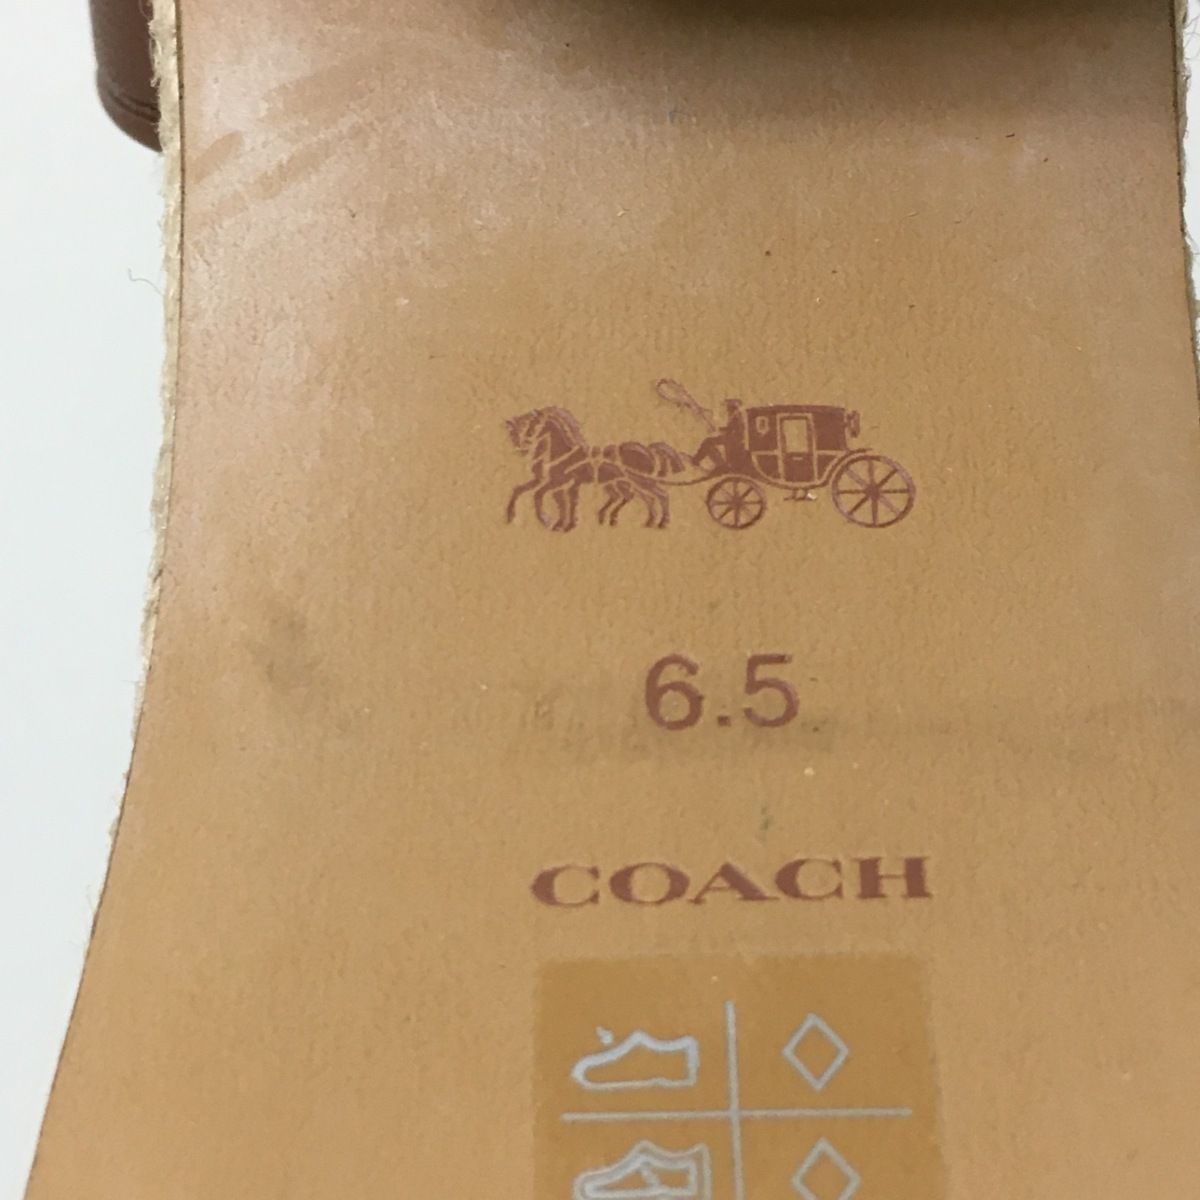 COACH(コーチ) サンダル 6.5 レディース - カーキ×ダークブラウン PVC 